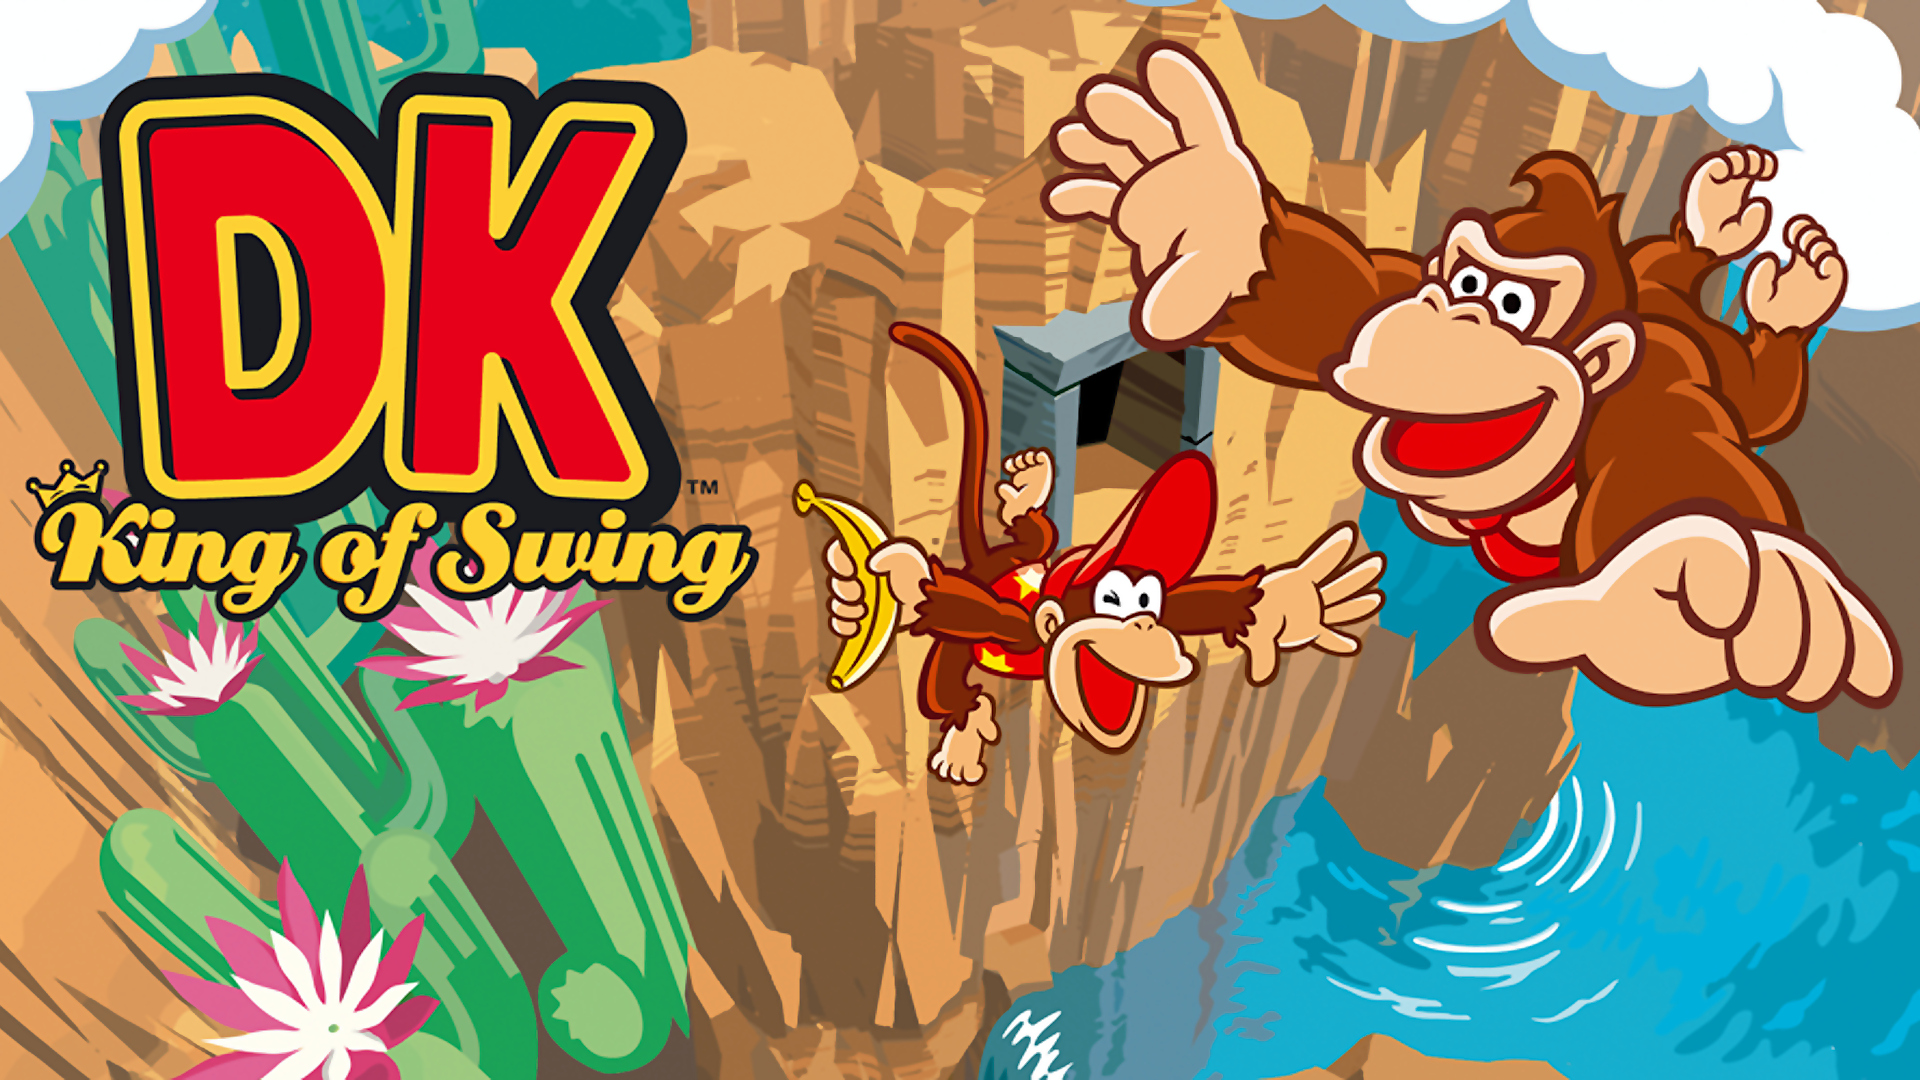 DK: King of Swing